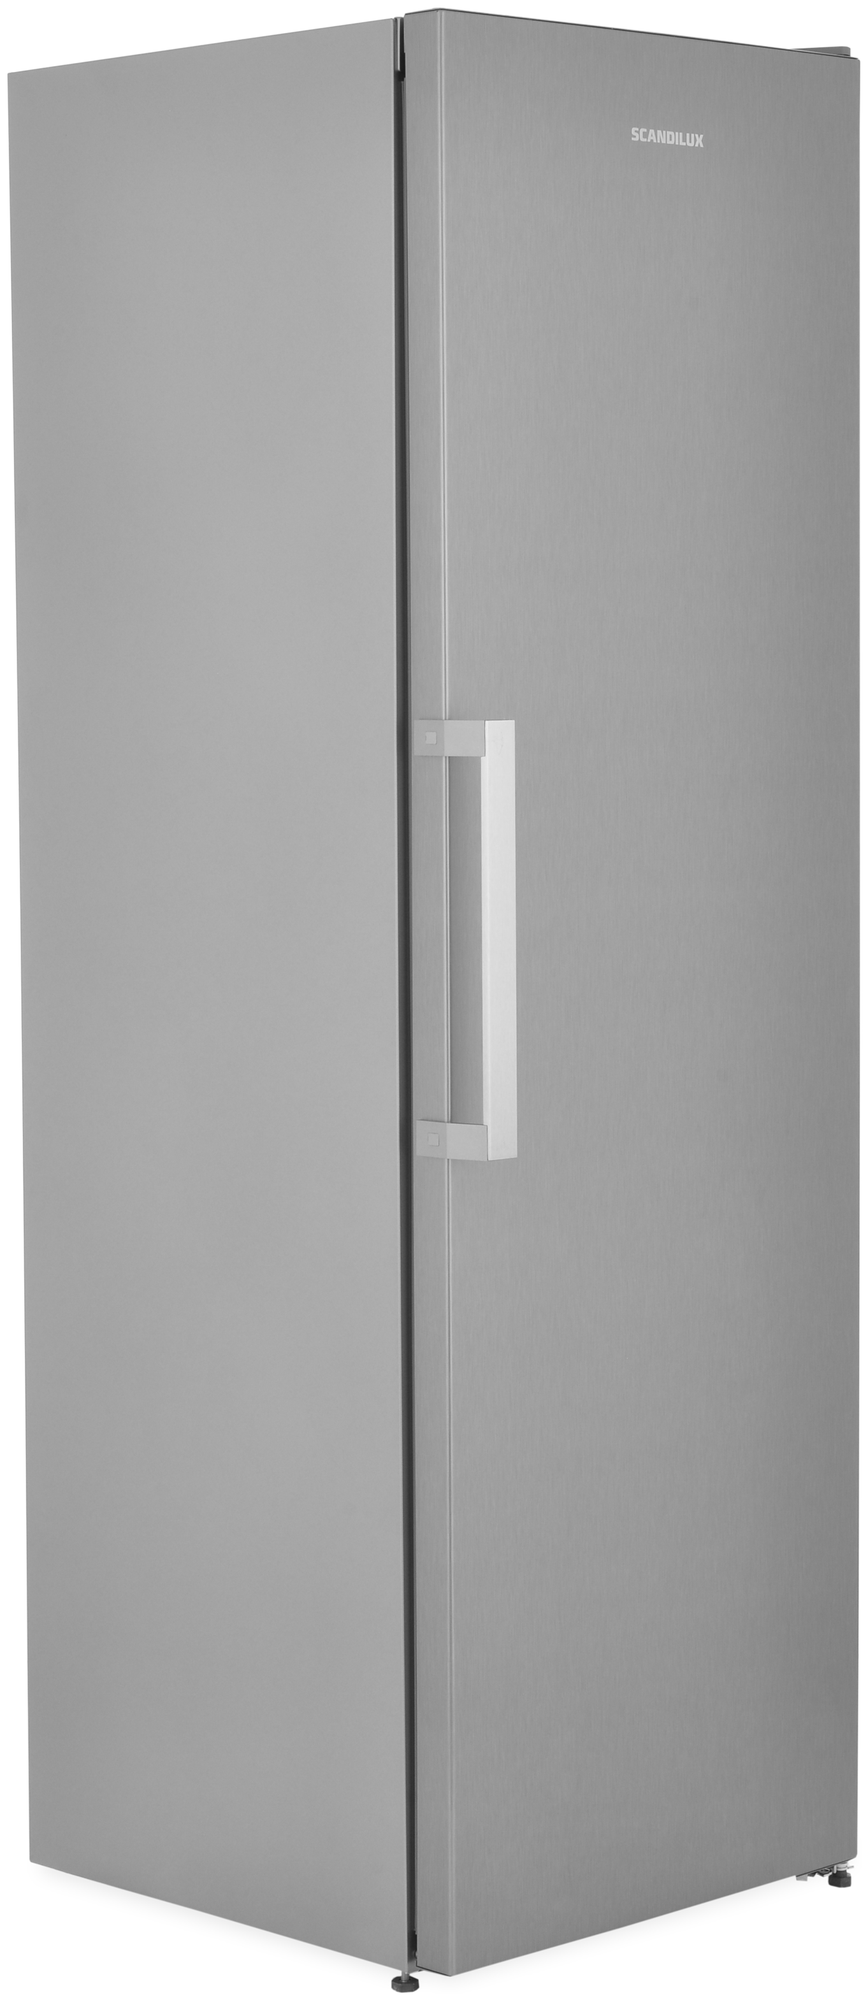 Однокамерный холодильник Scandilux - фото №2